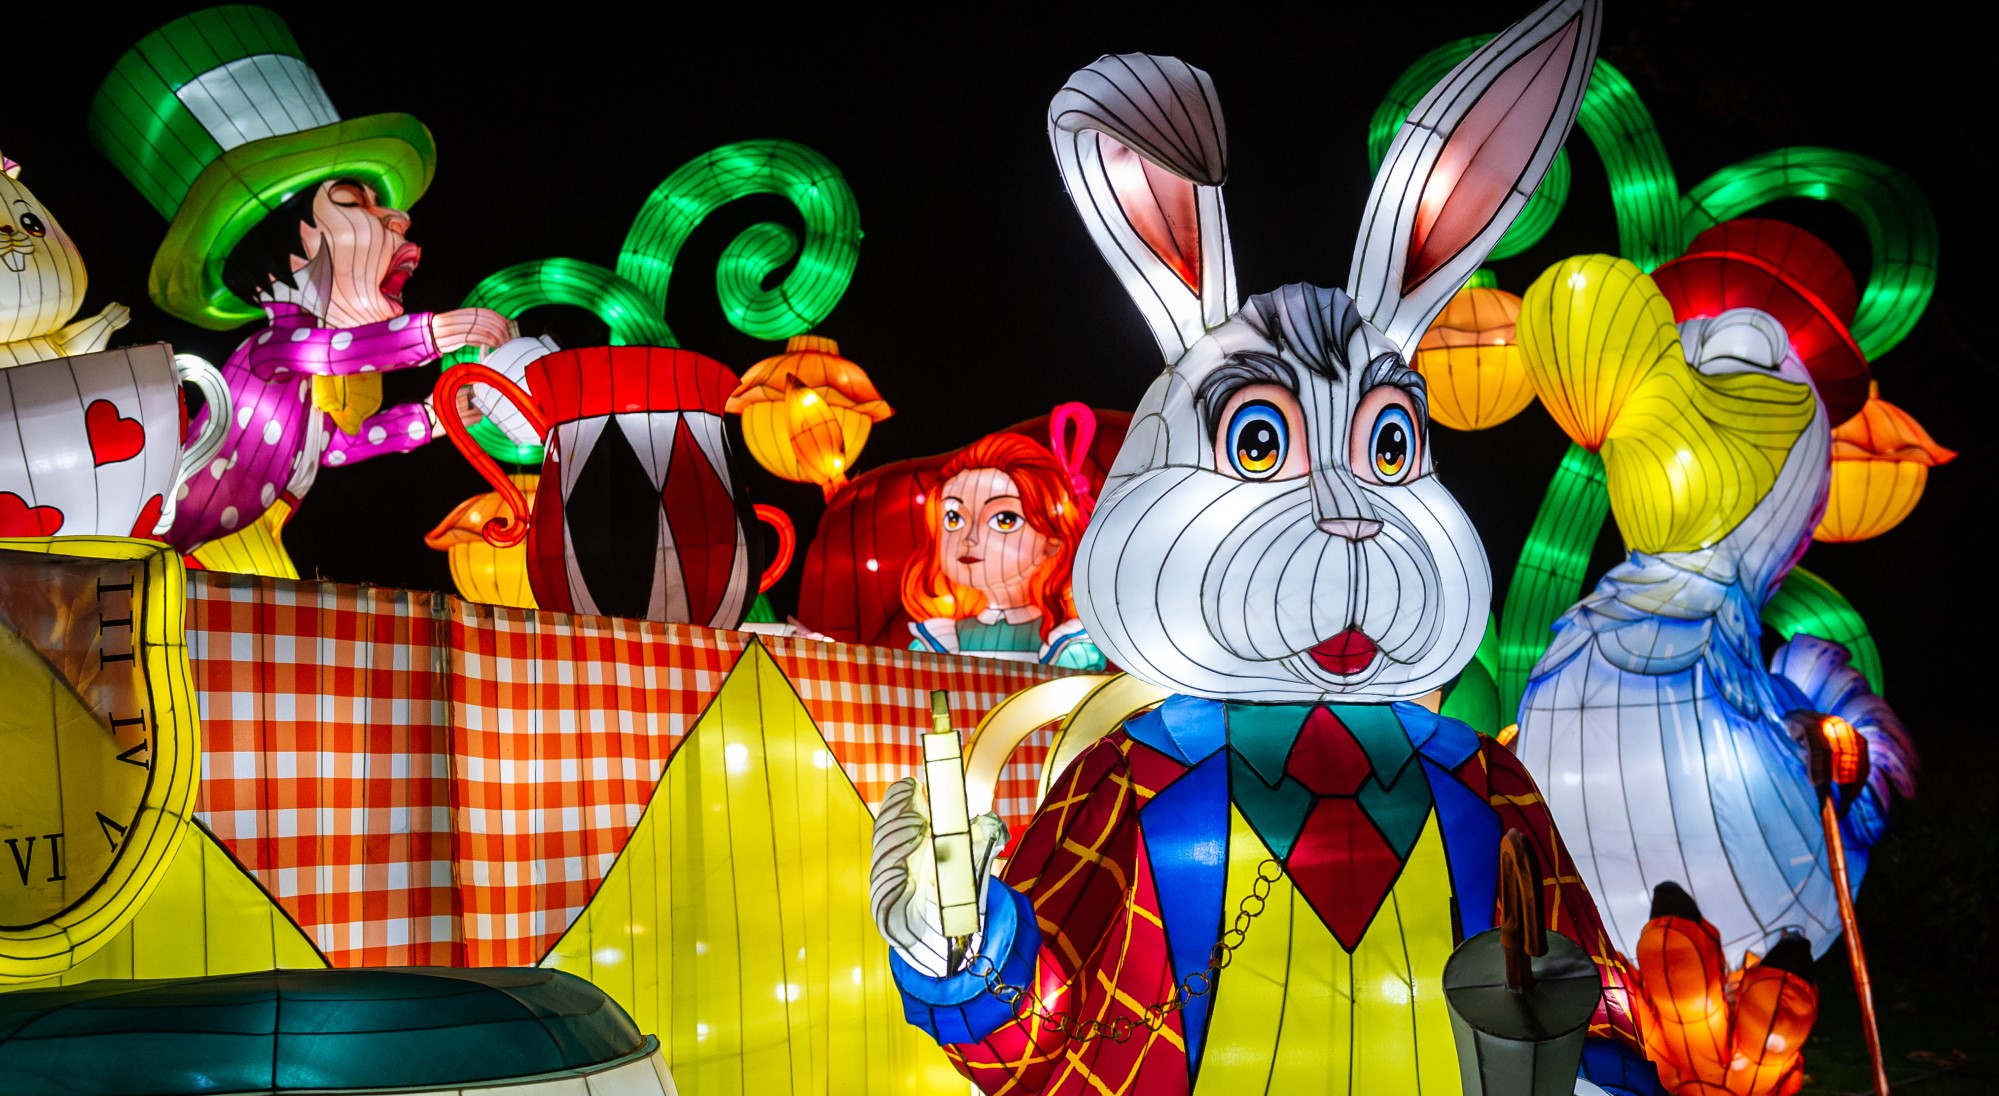 Alice in Wonderland light installation at Antwerp Zoo